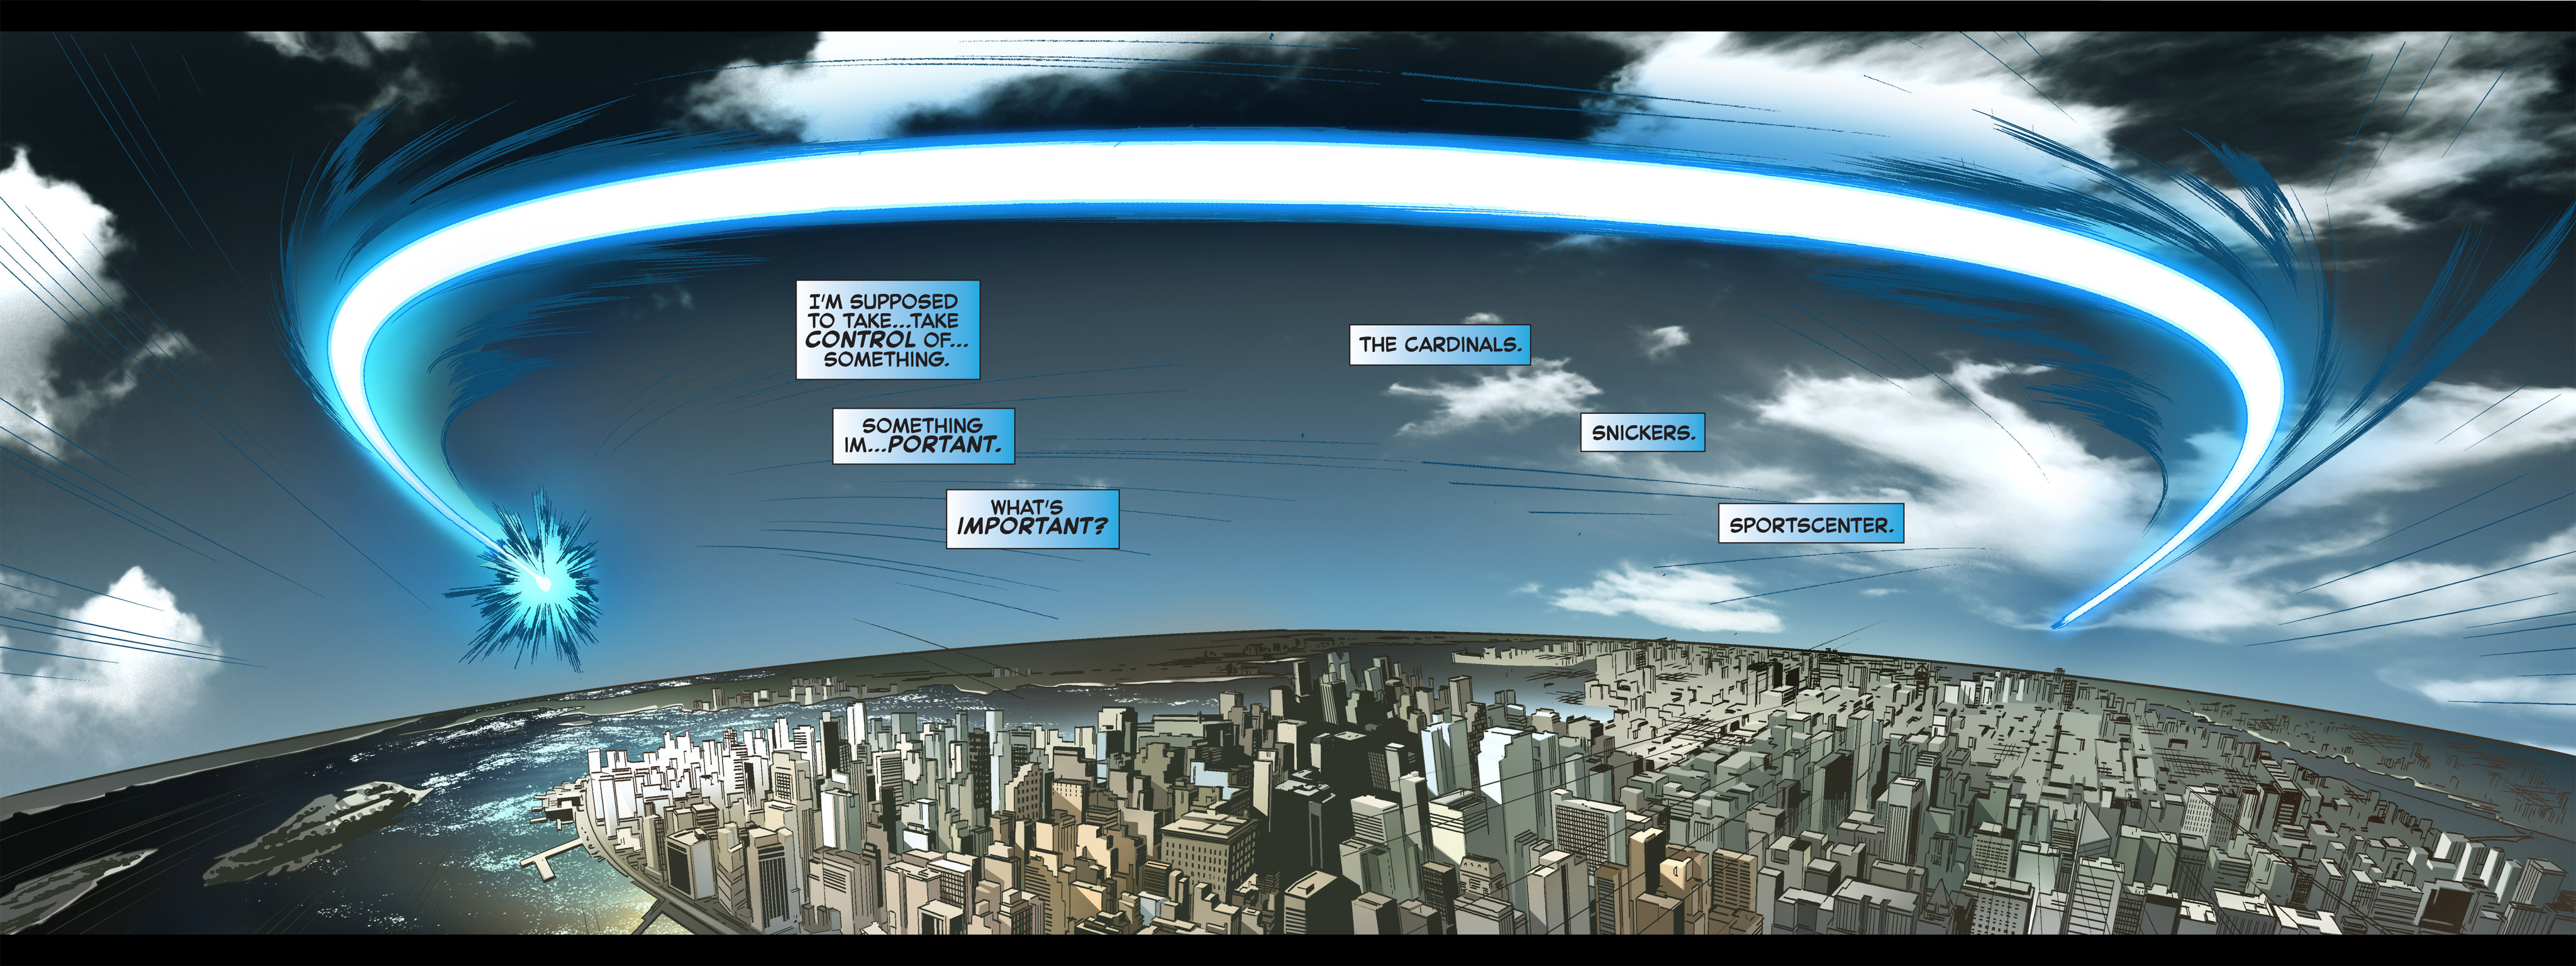 Read online Avengers vs. X-Men: Infinite comic -  Issue #1 - 40